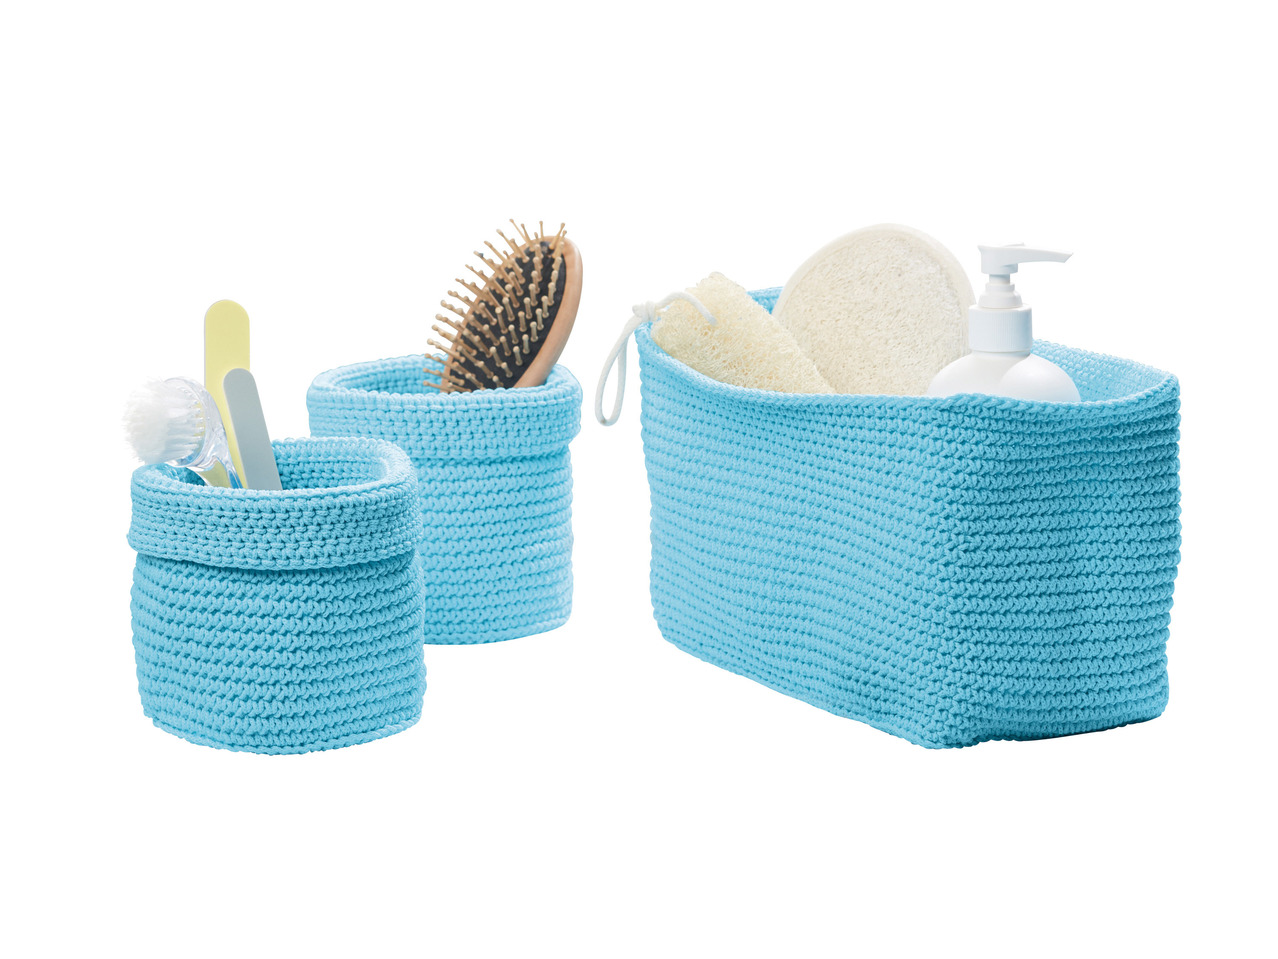 MIOMARE Crocheted Storage Baskets